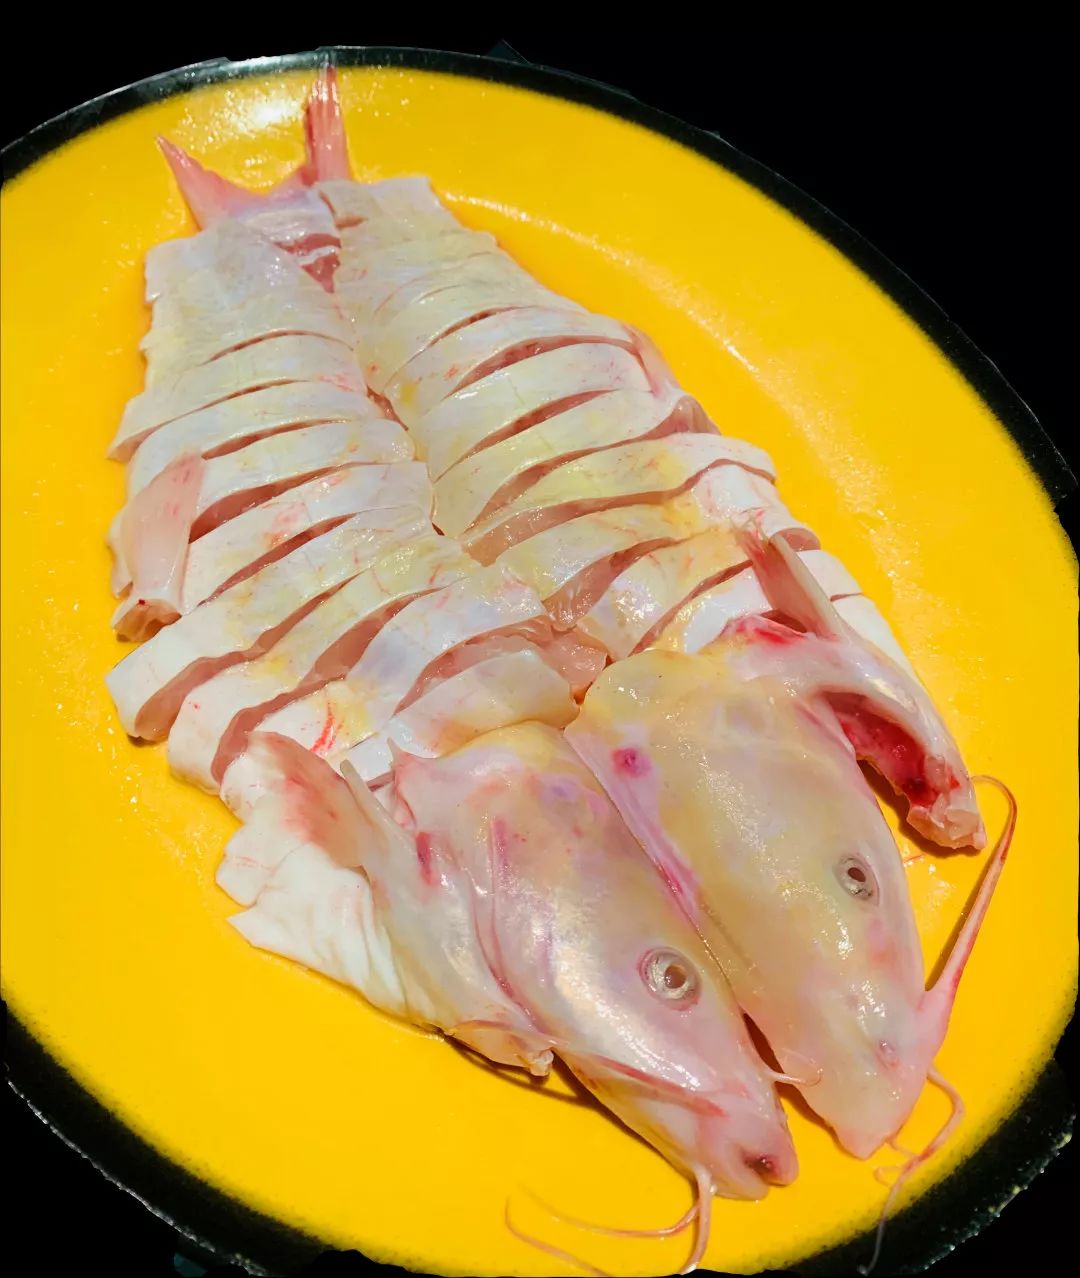 黄沙鱼生活在池塘或浅滩等静水中,是一种不太常见的鱼类,其肉质醇厚